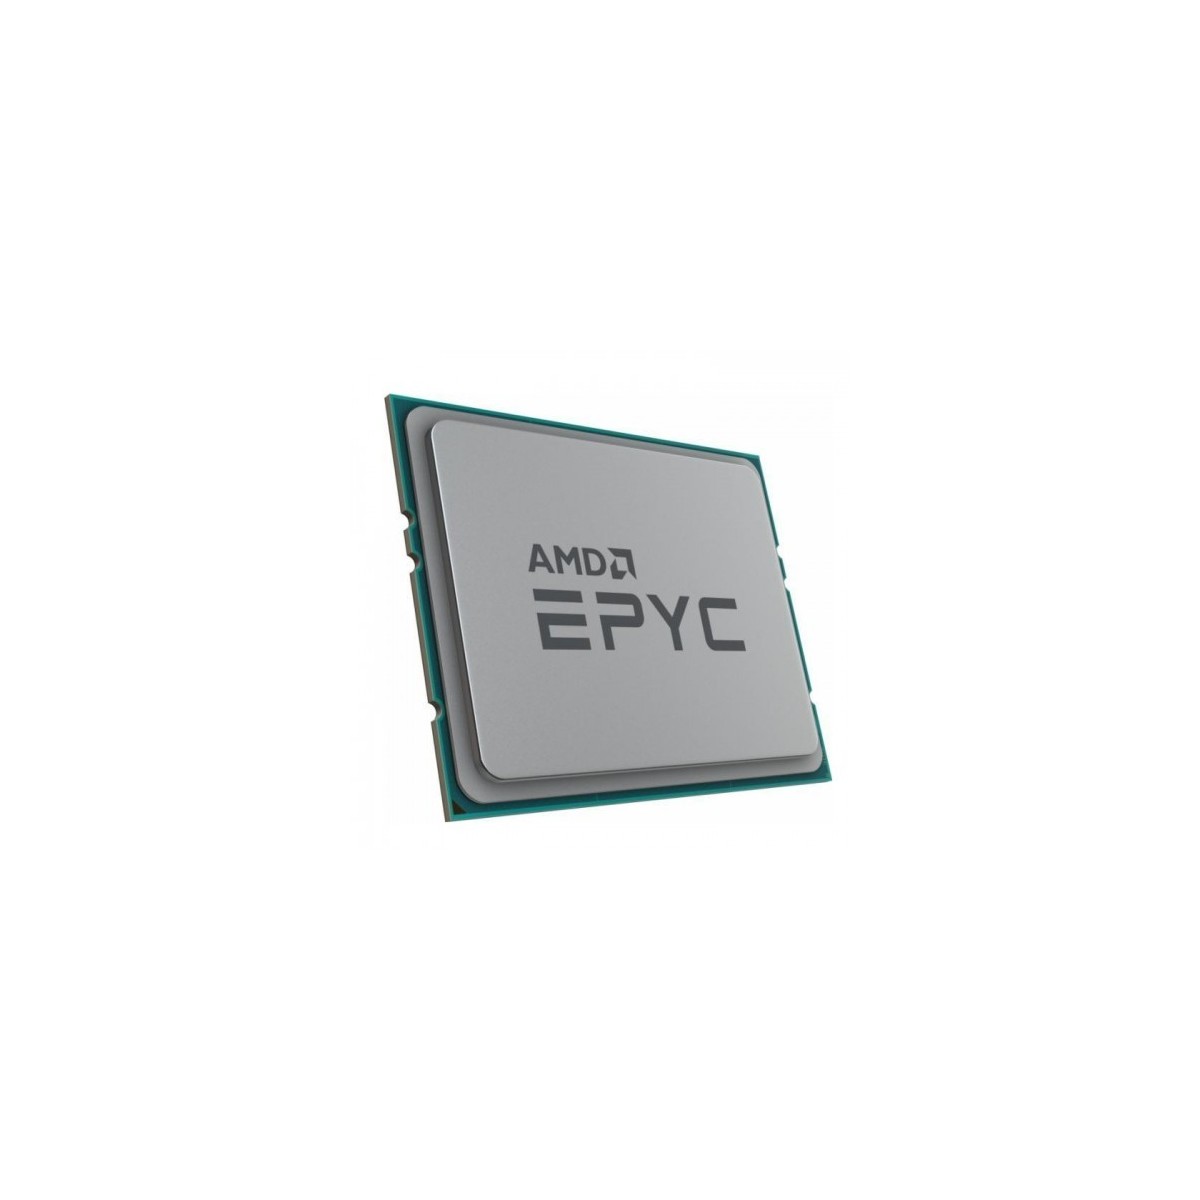 Lenovo ThinkSystem SR645 AMD EPYC 7302 16C - AMD EPYC - 3 GHz